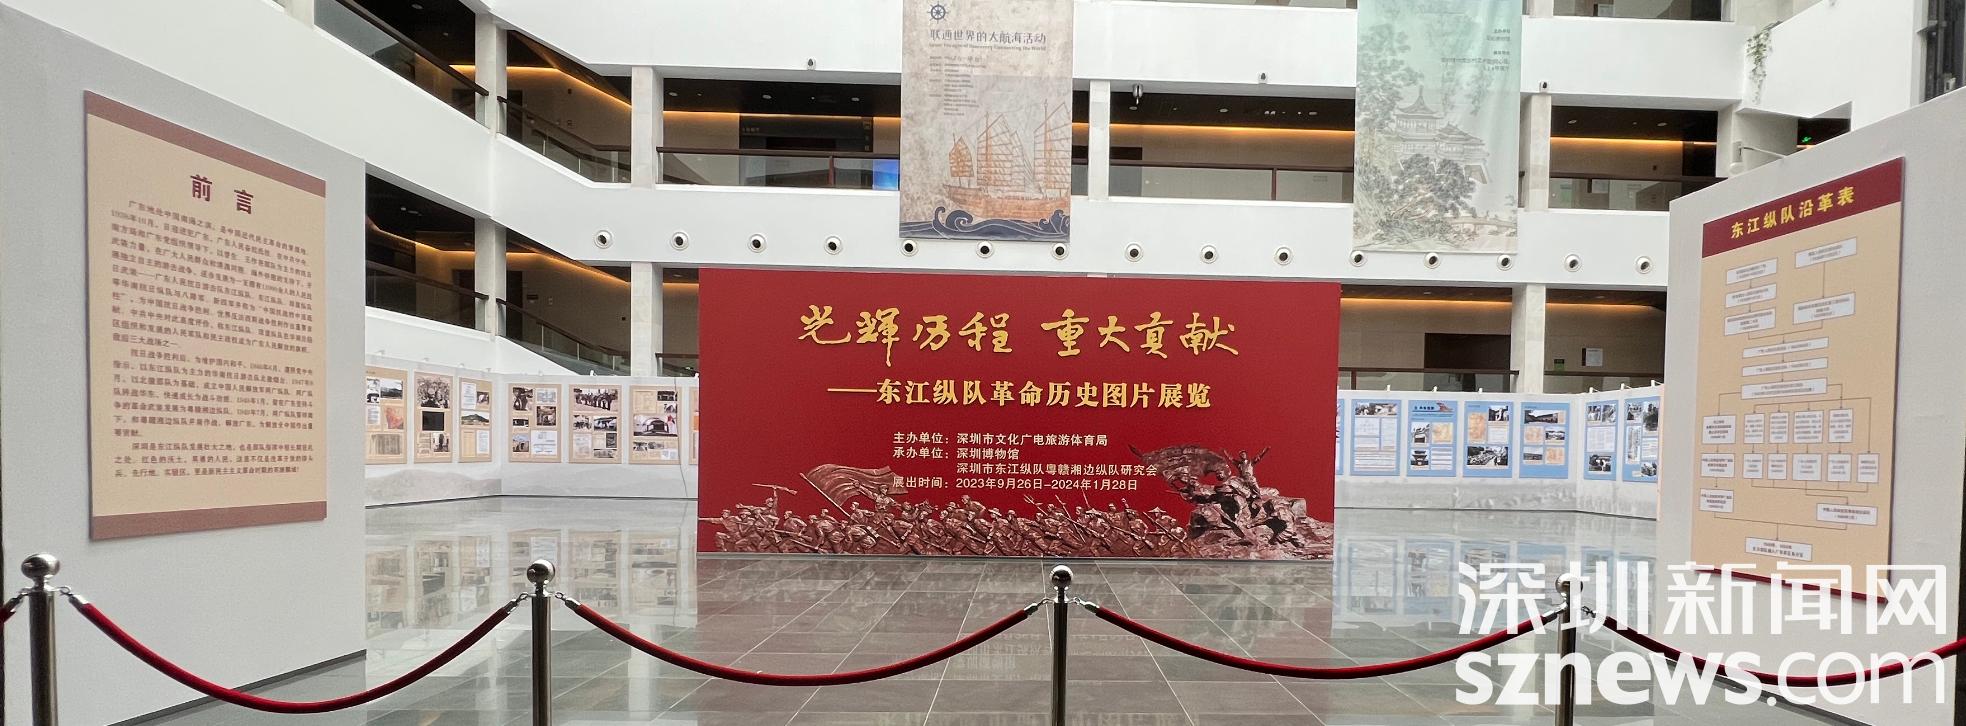 传承红色基因 东江纵队革命历史图片展览在深圳博物馆展出